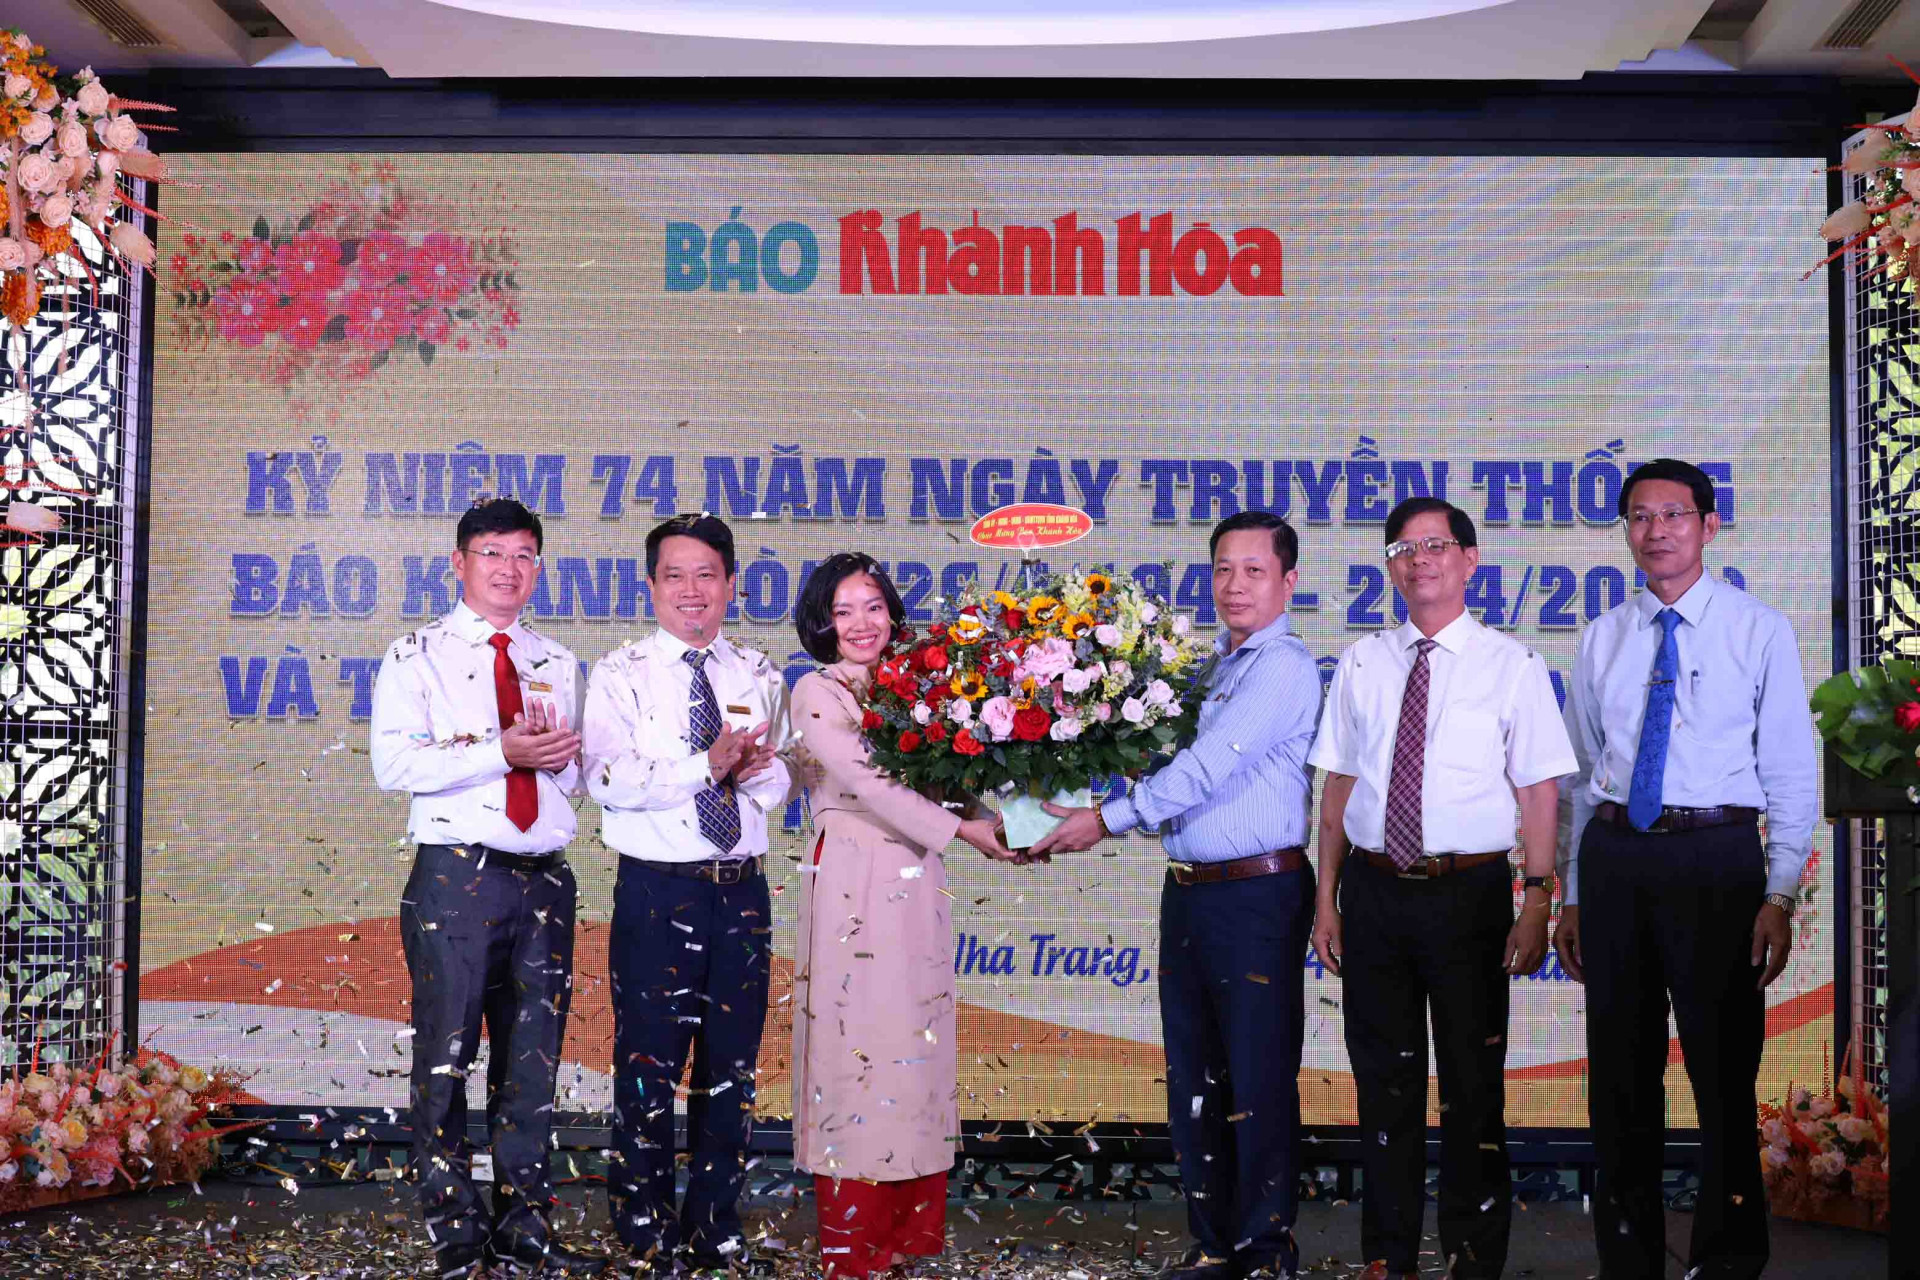 Lãnh đạo tỉnh Khánh Hòa tặng hoa chúc mừng ngày truyền thống của Báo Khánh Hòa.